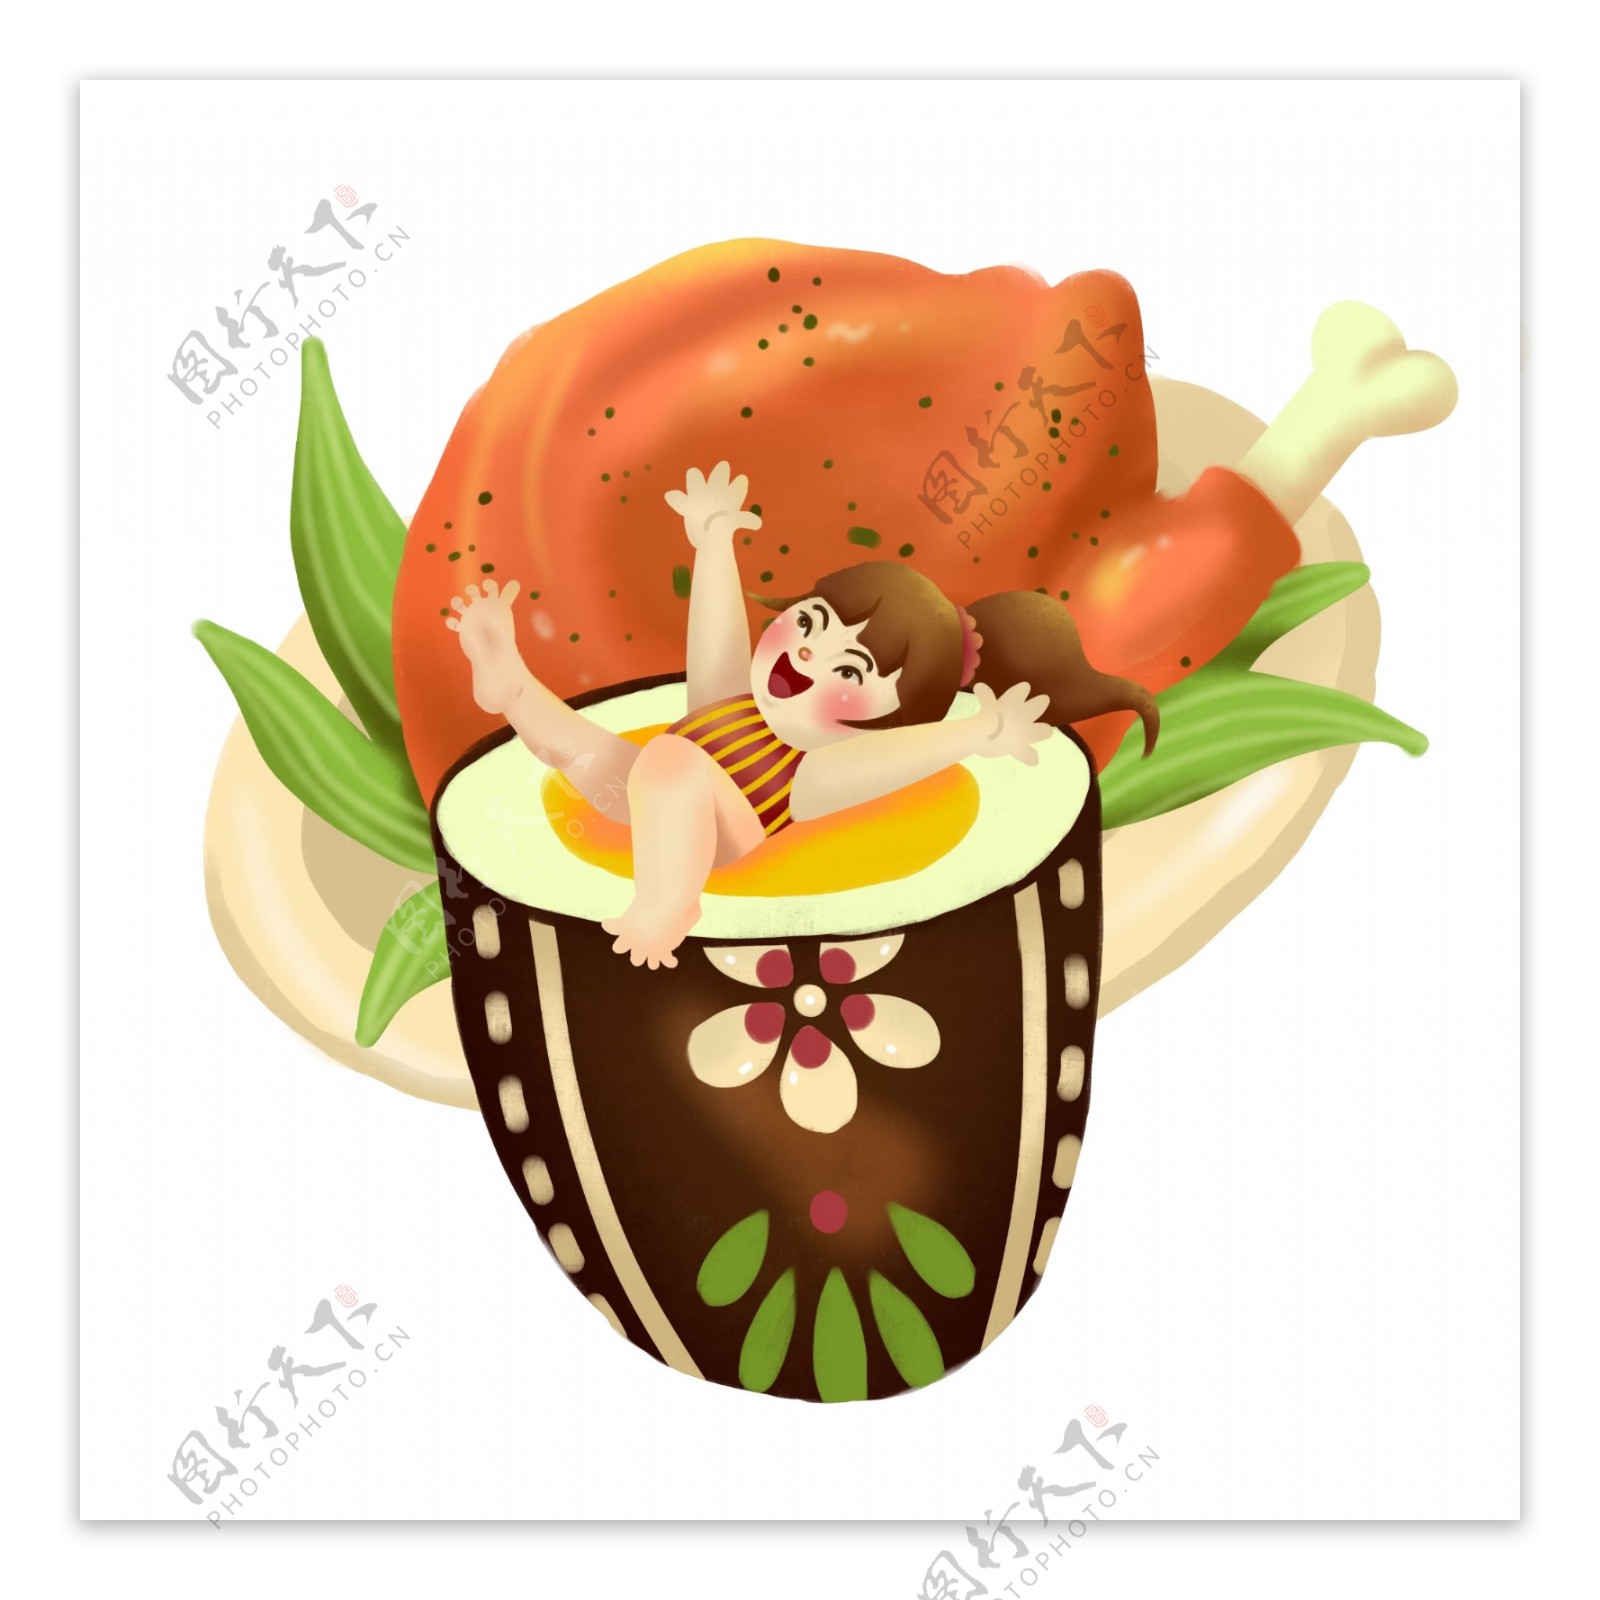 原创手绘风插画感恩节吃火鸡彩蛋设计元素